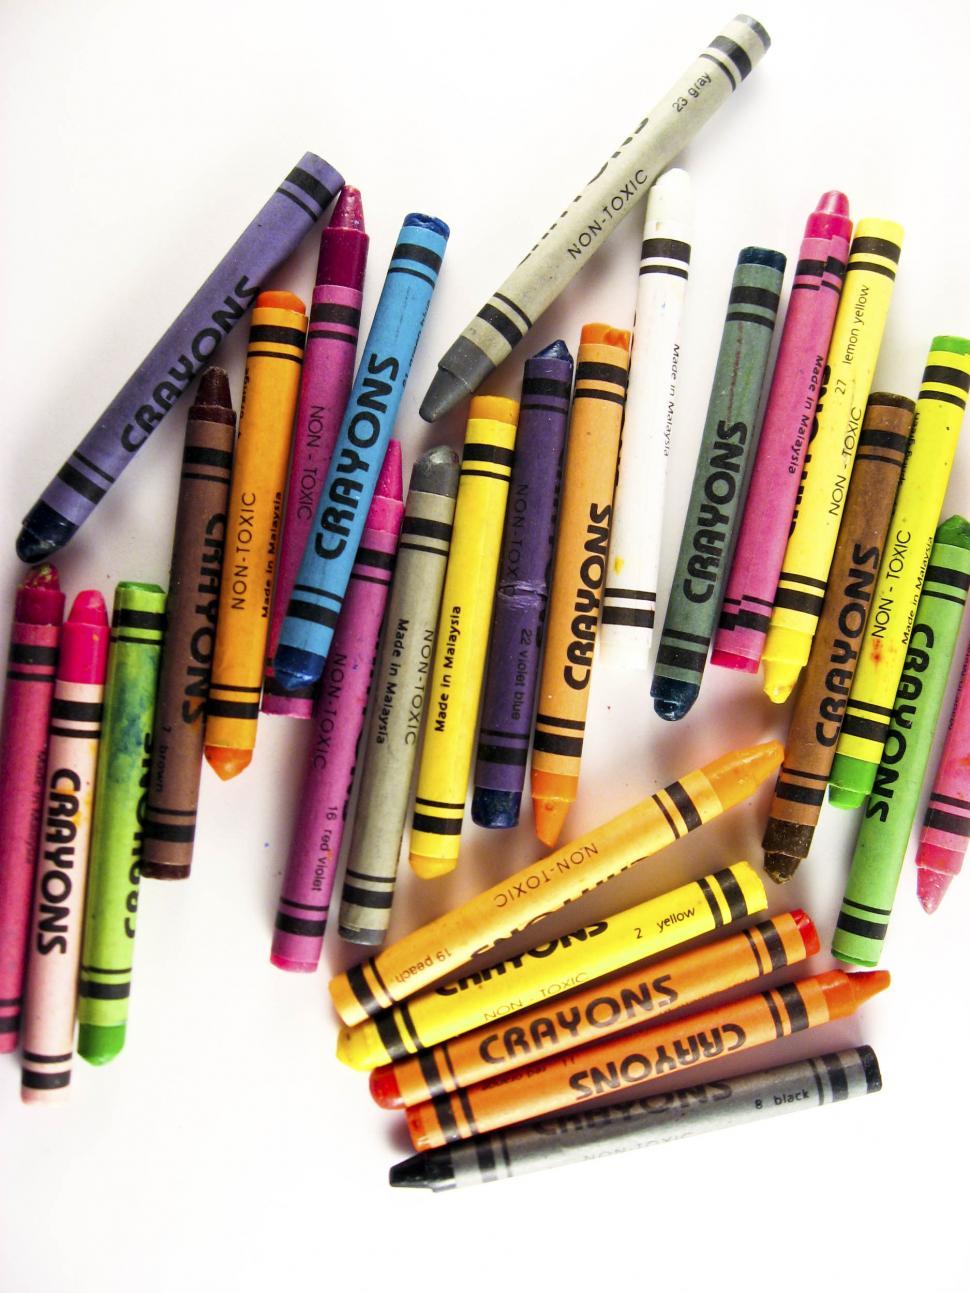 Free Image of crayon pile 